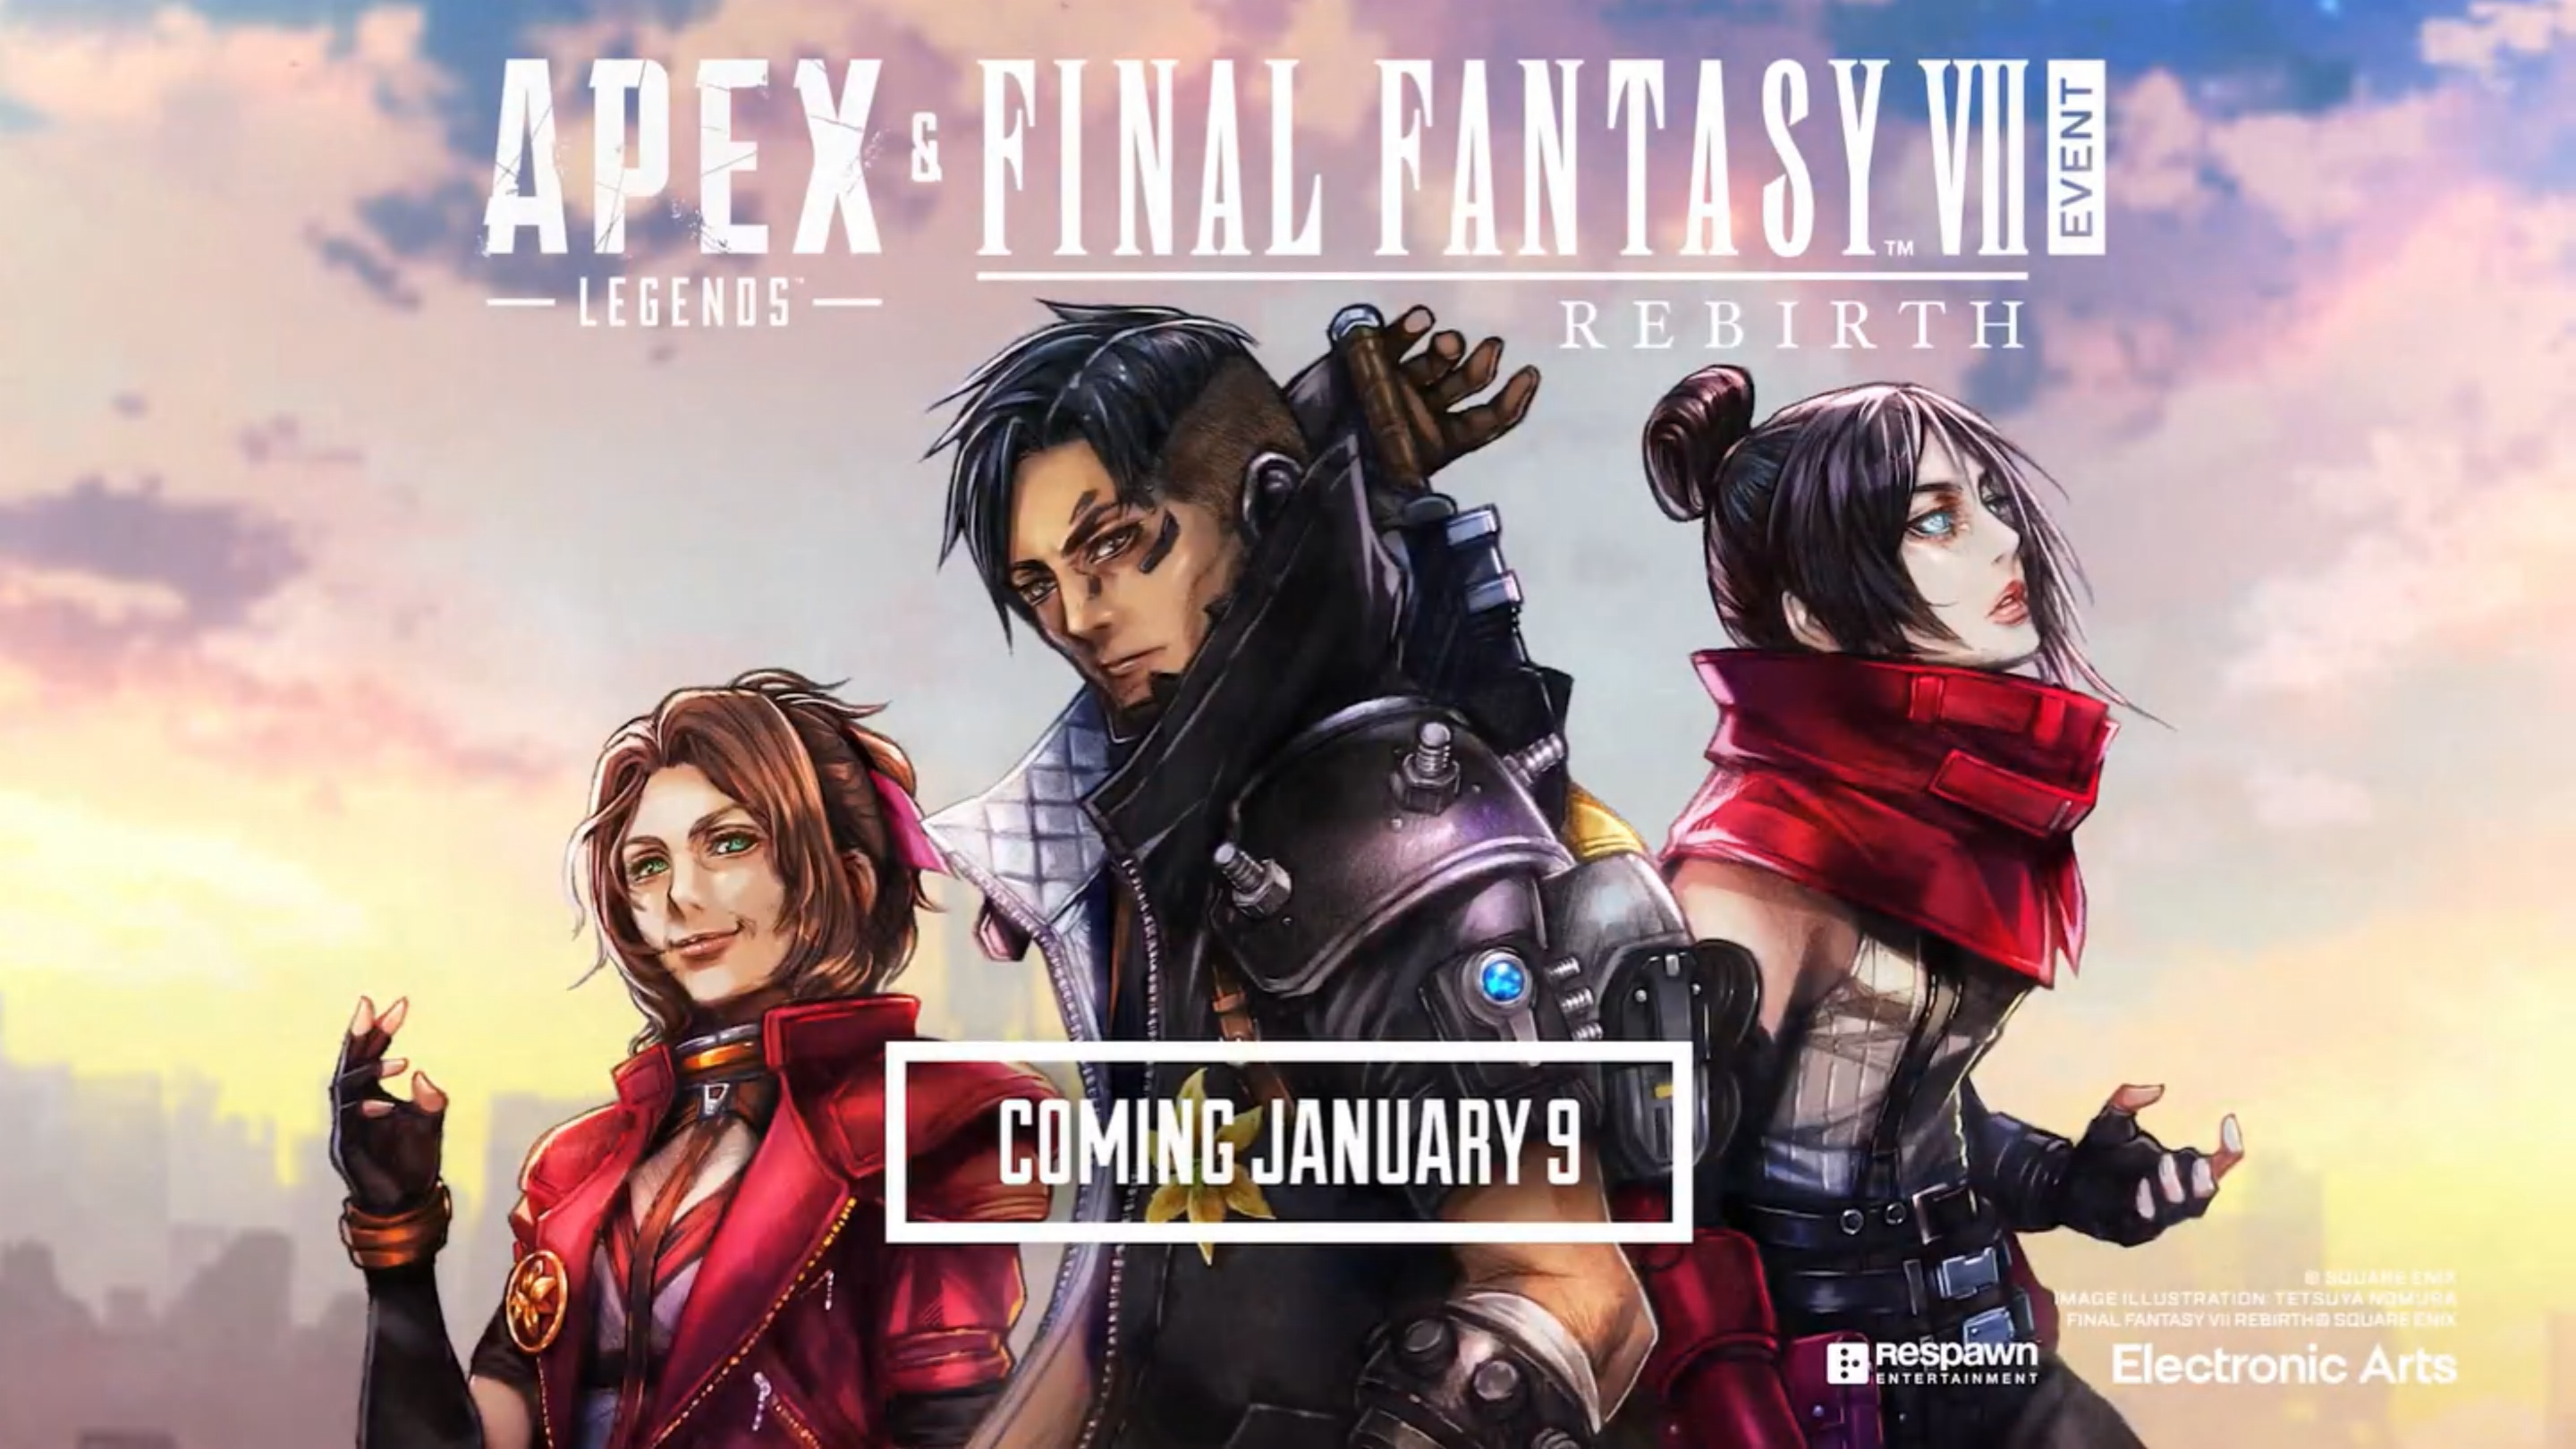 FFVII Ever Crisis x Final Fantasy IX Crossover Announced - Siliconera